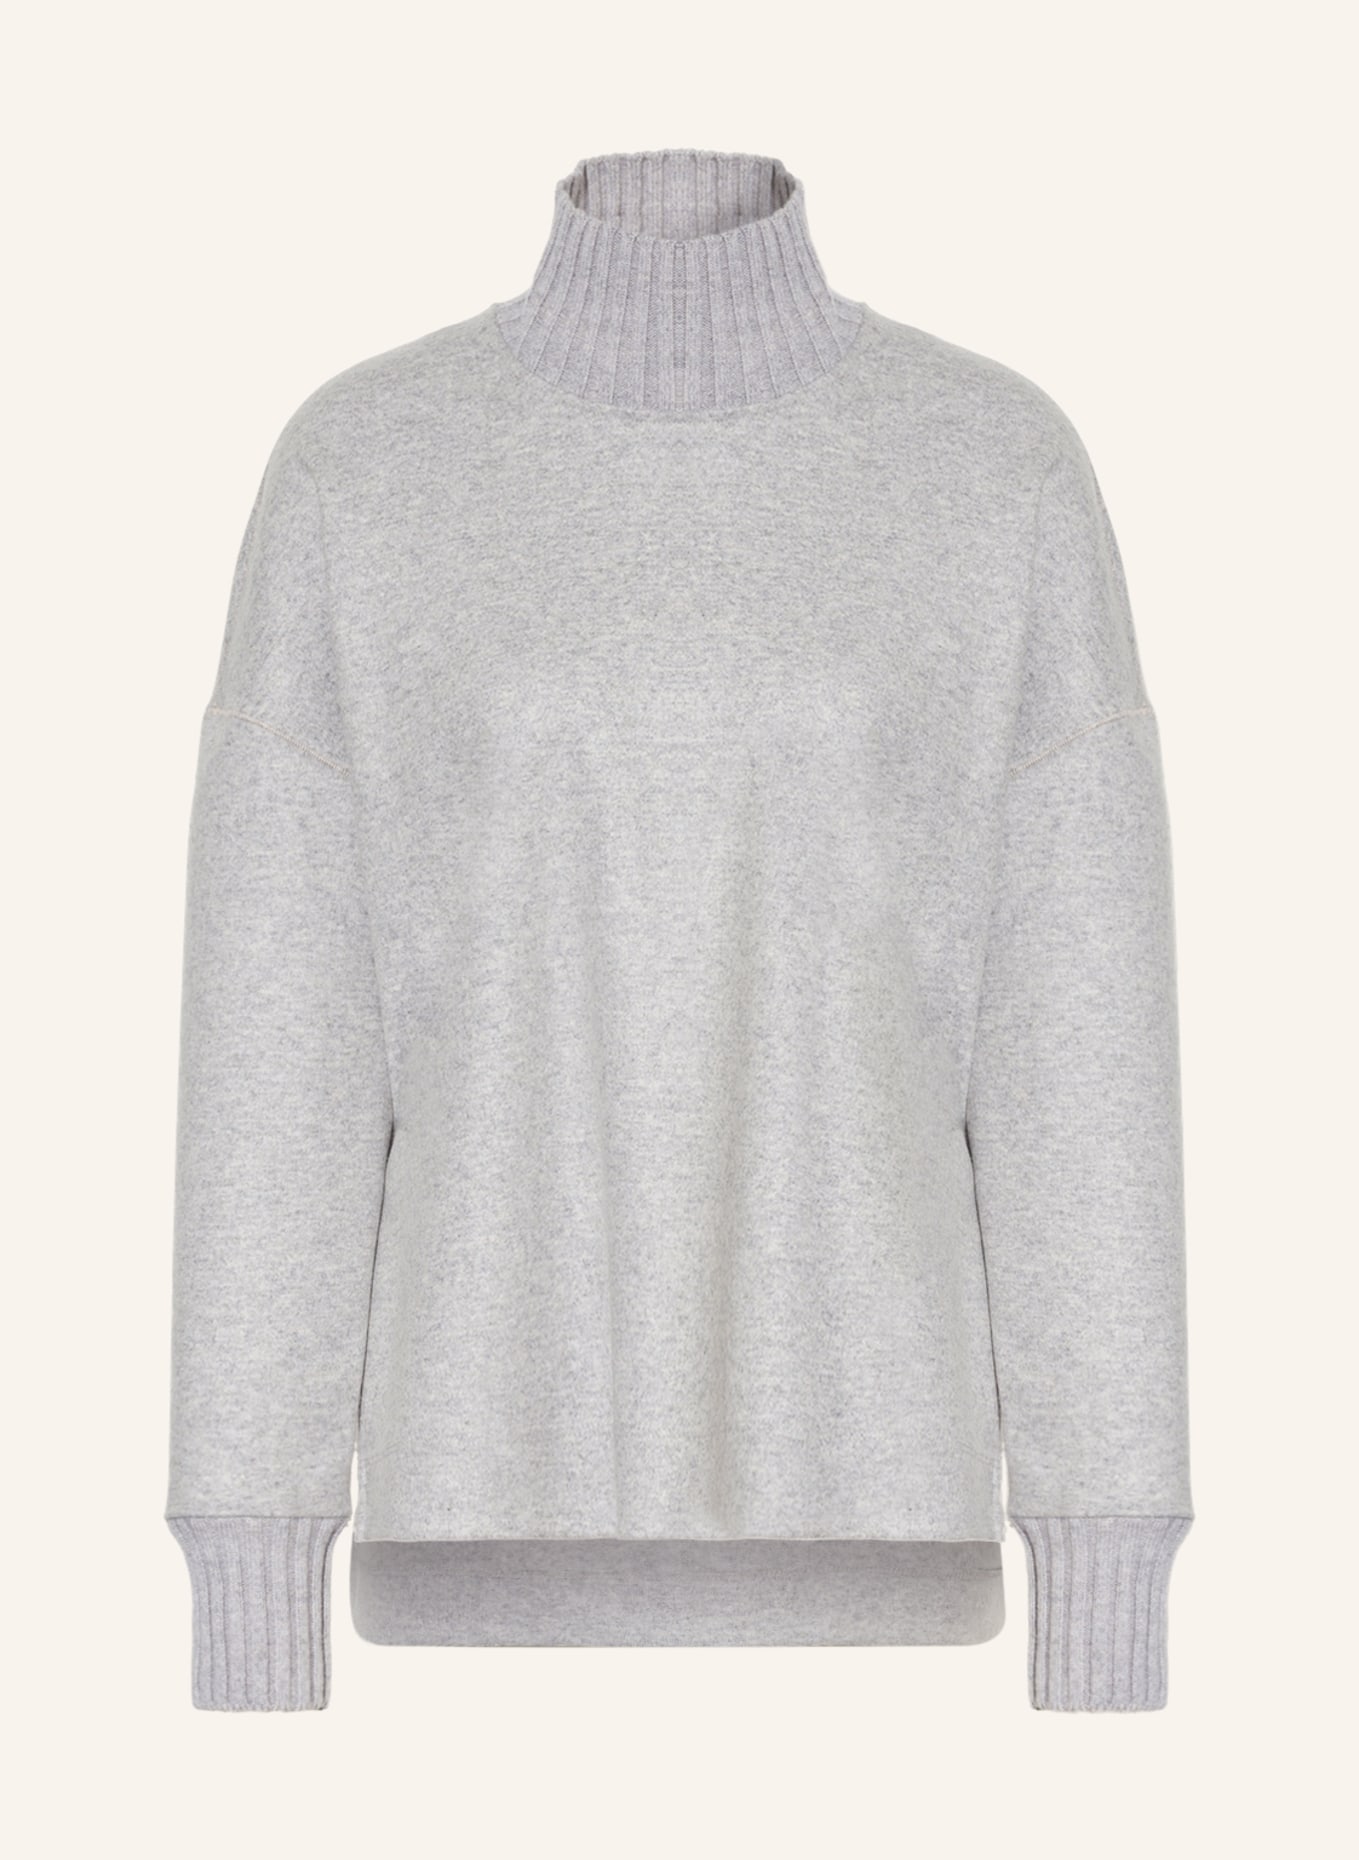 ANTONELLI firenze Sweater CORTESE, Color: GRAY (Image 1)